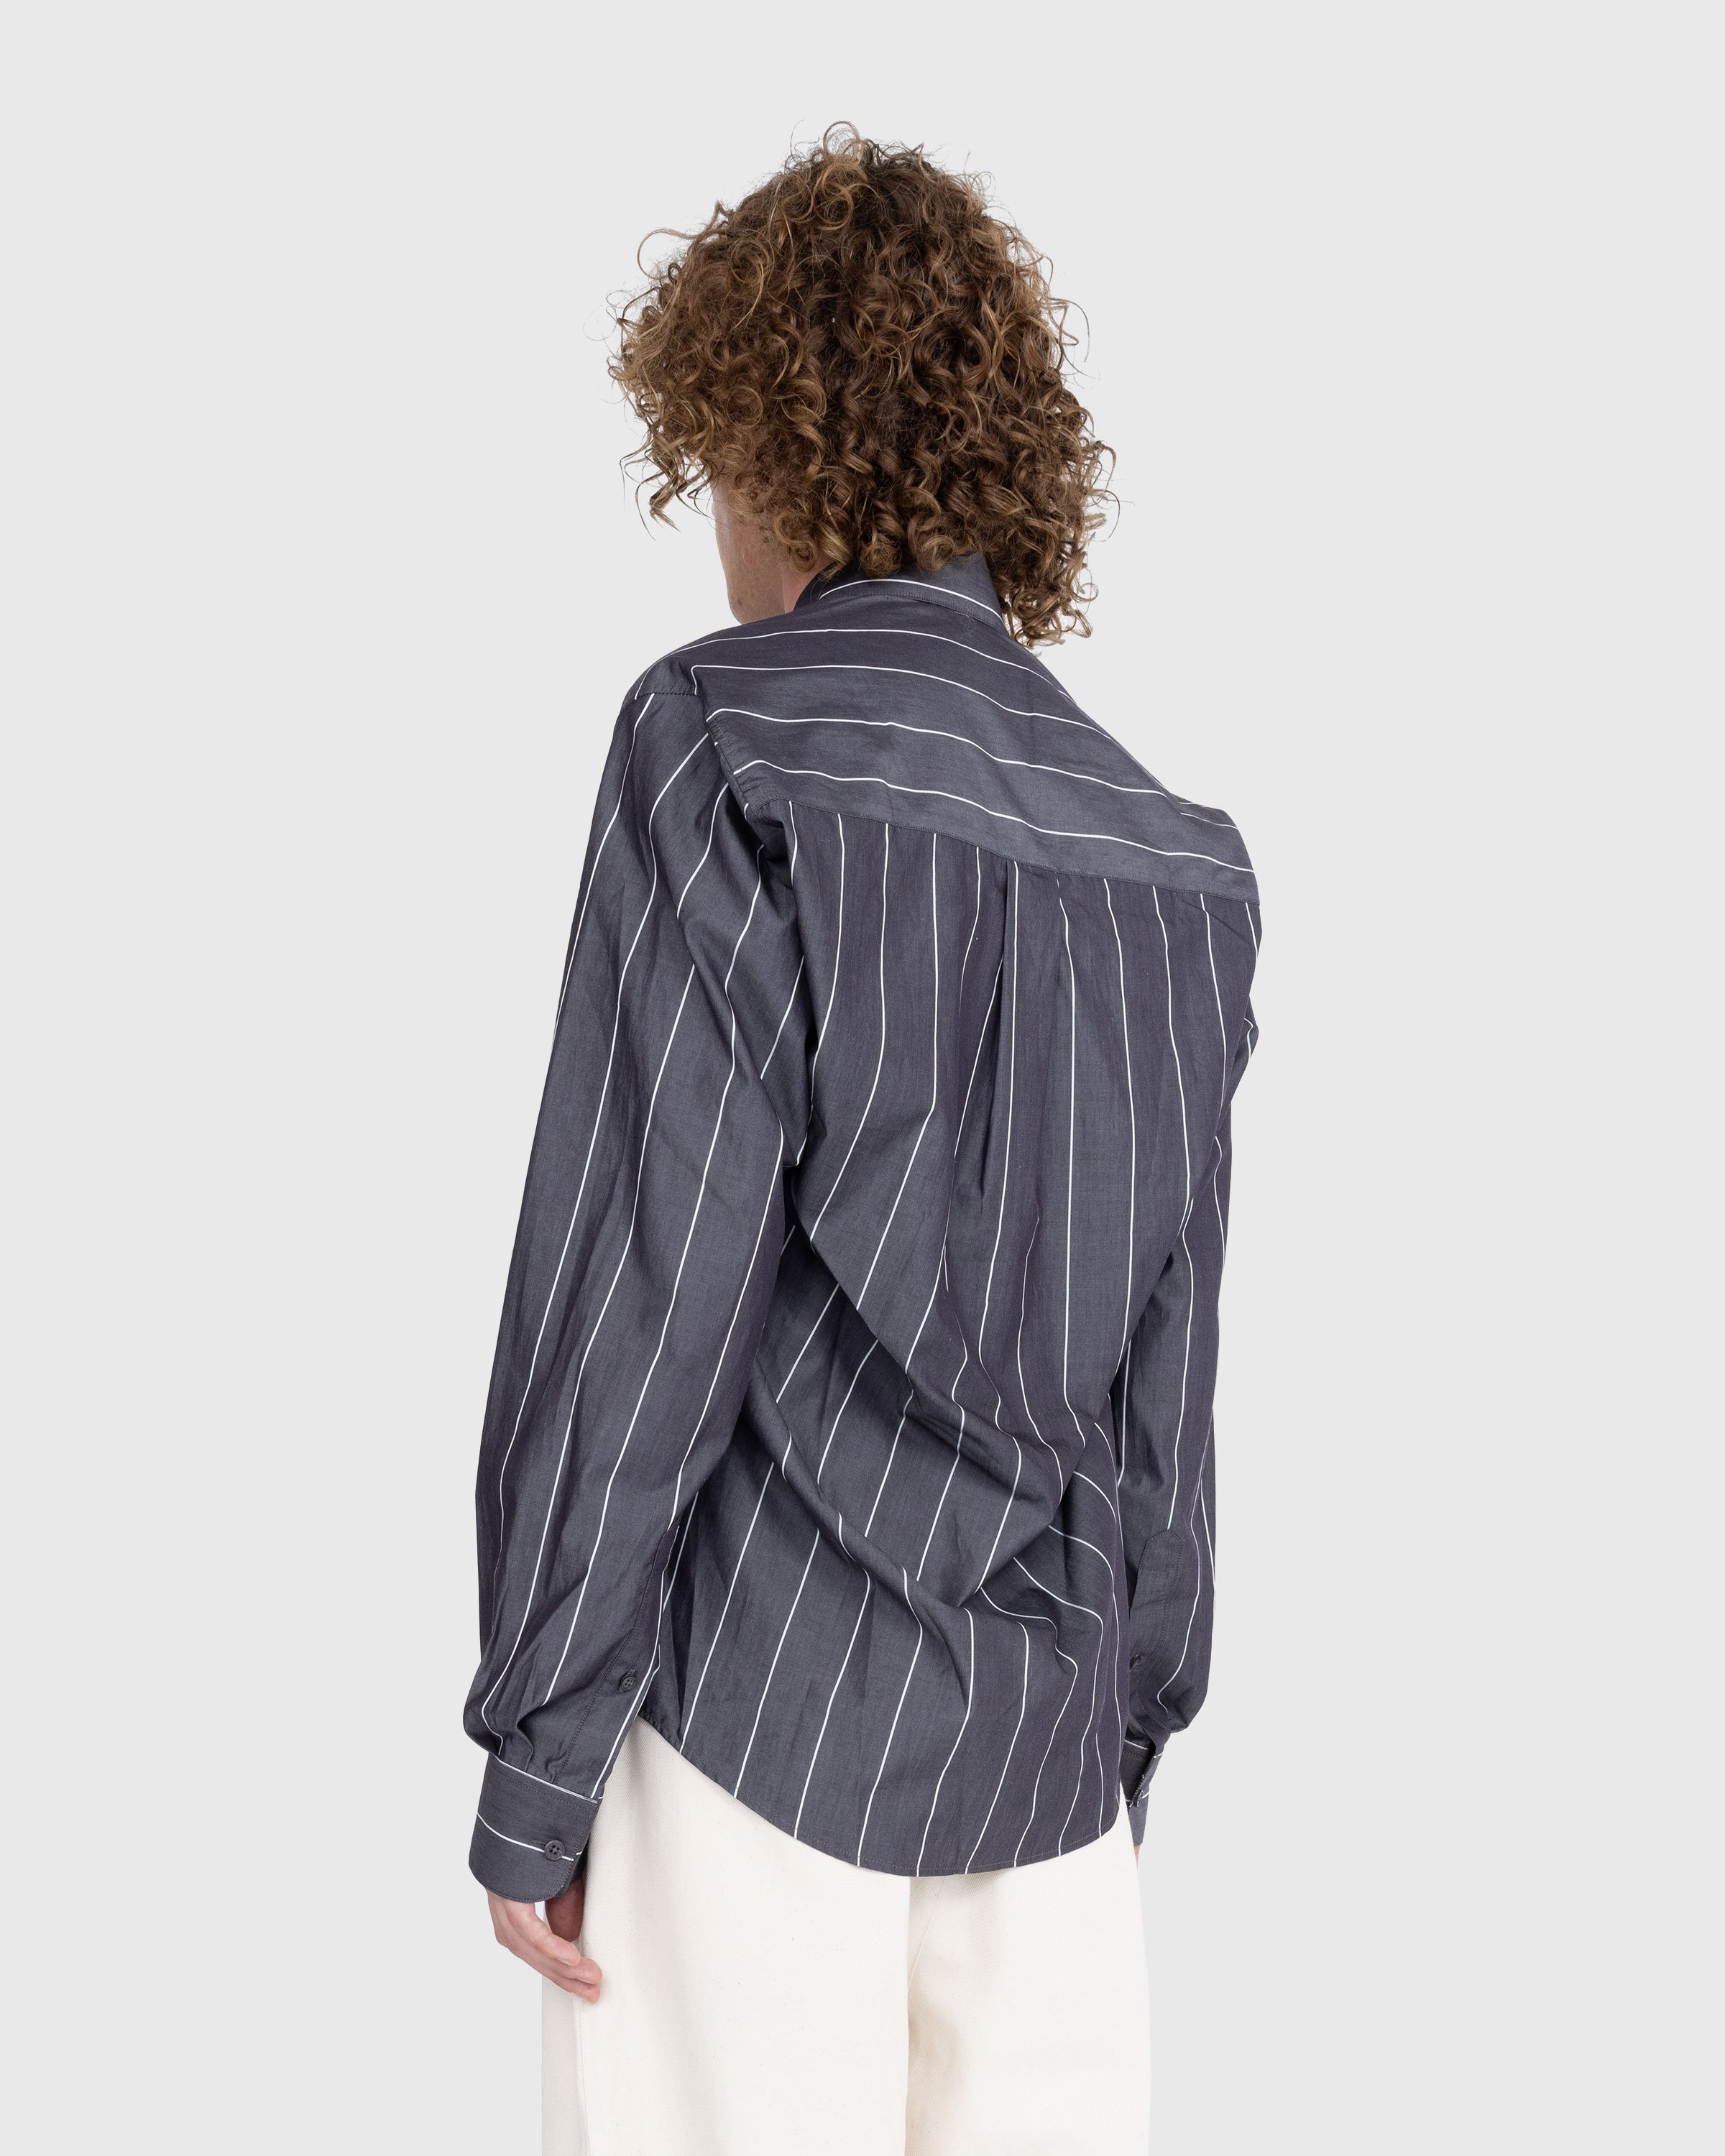 Martine Rose - Pulled Neck Shirt Grey/White - Clothing - Grey - Image 3